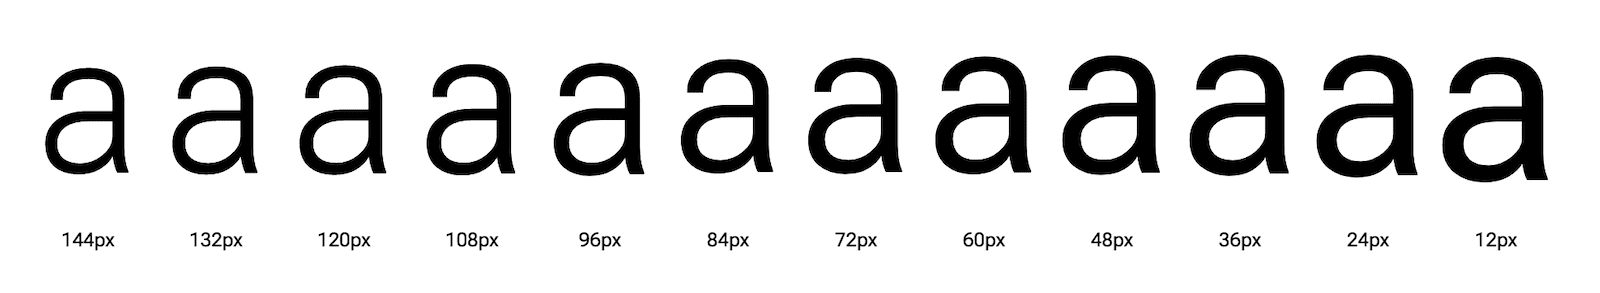 La letra 'a' se muestra en diferentes tamaños ópticos